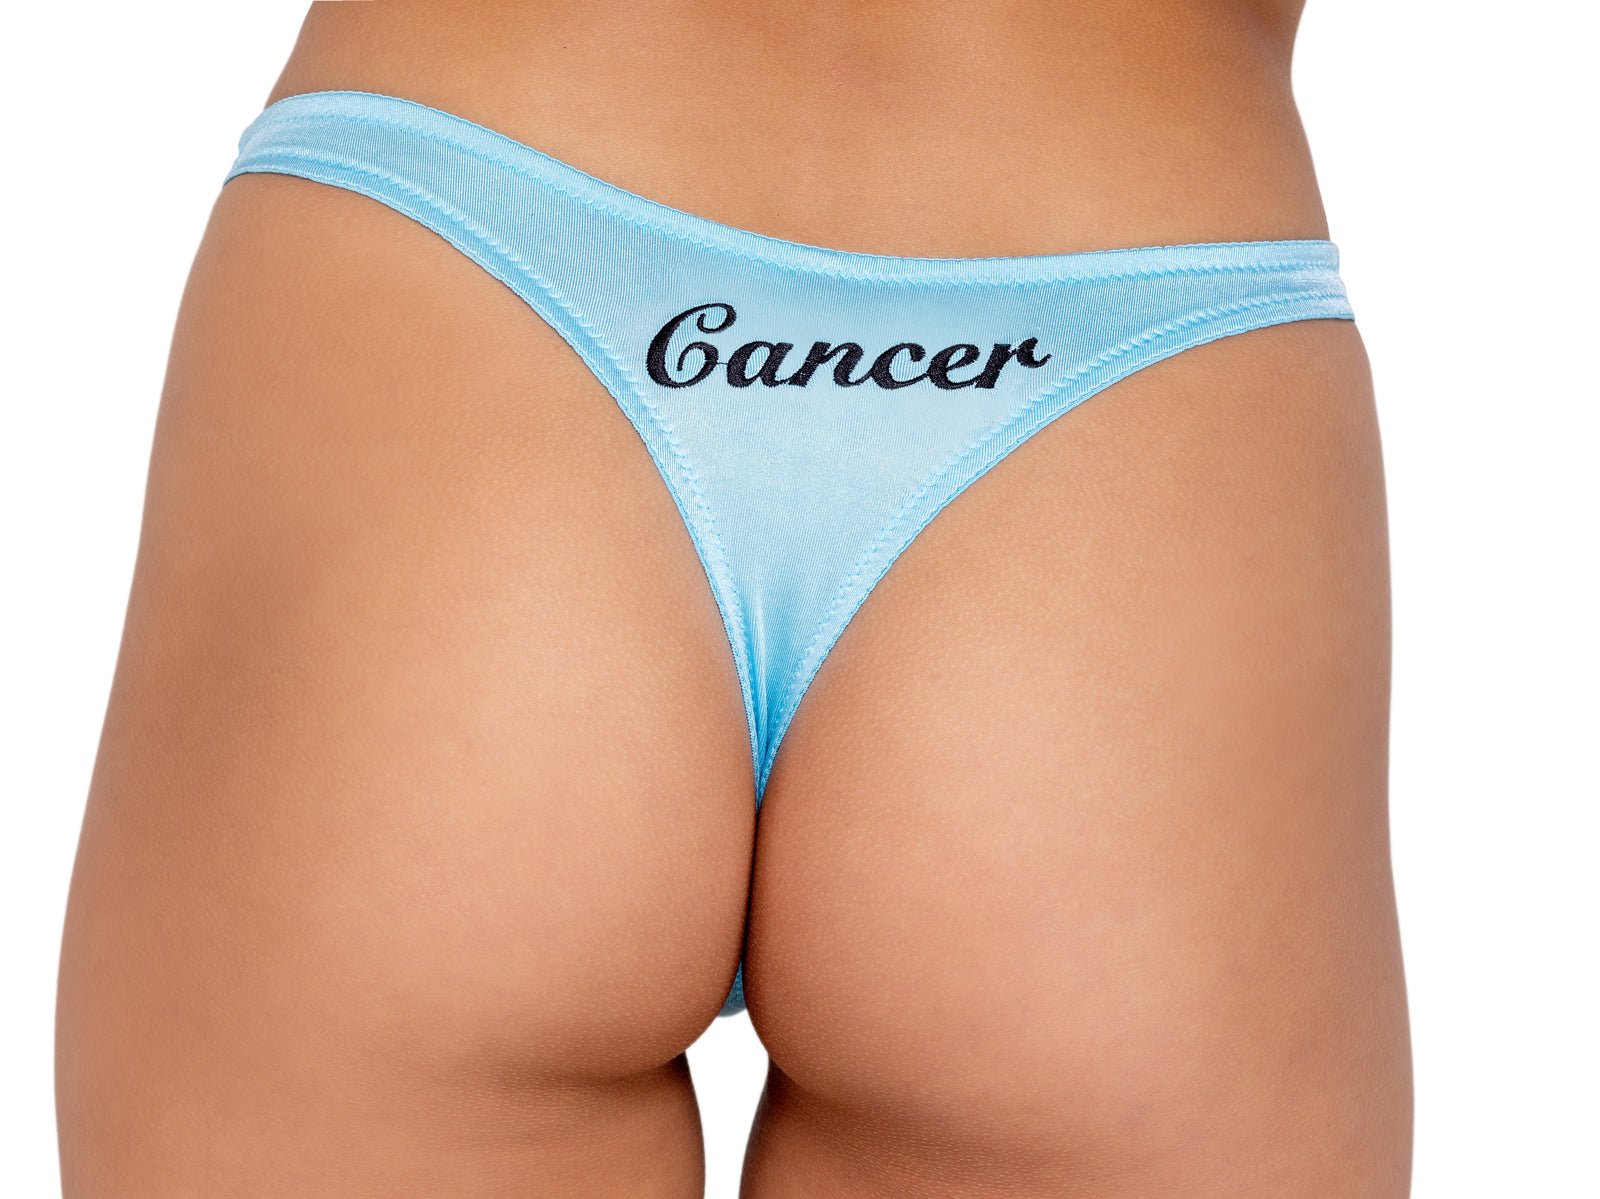 LI530 - Zodiac Cancer Panty Eye Candy Sensation